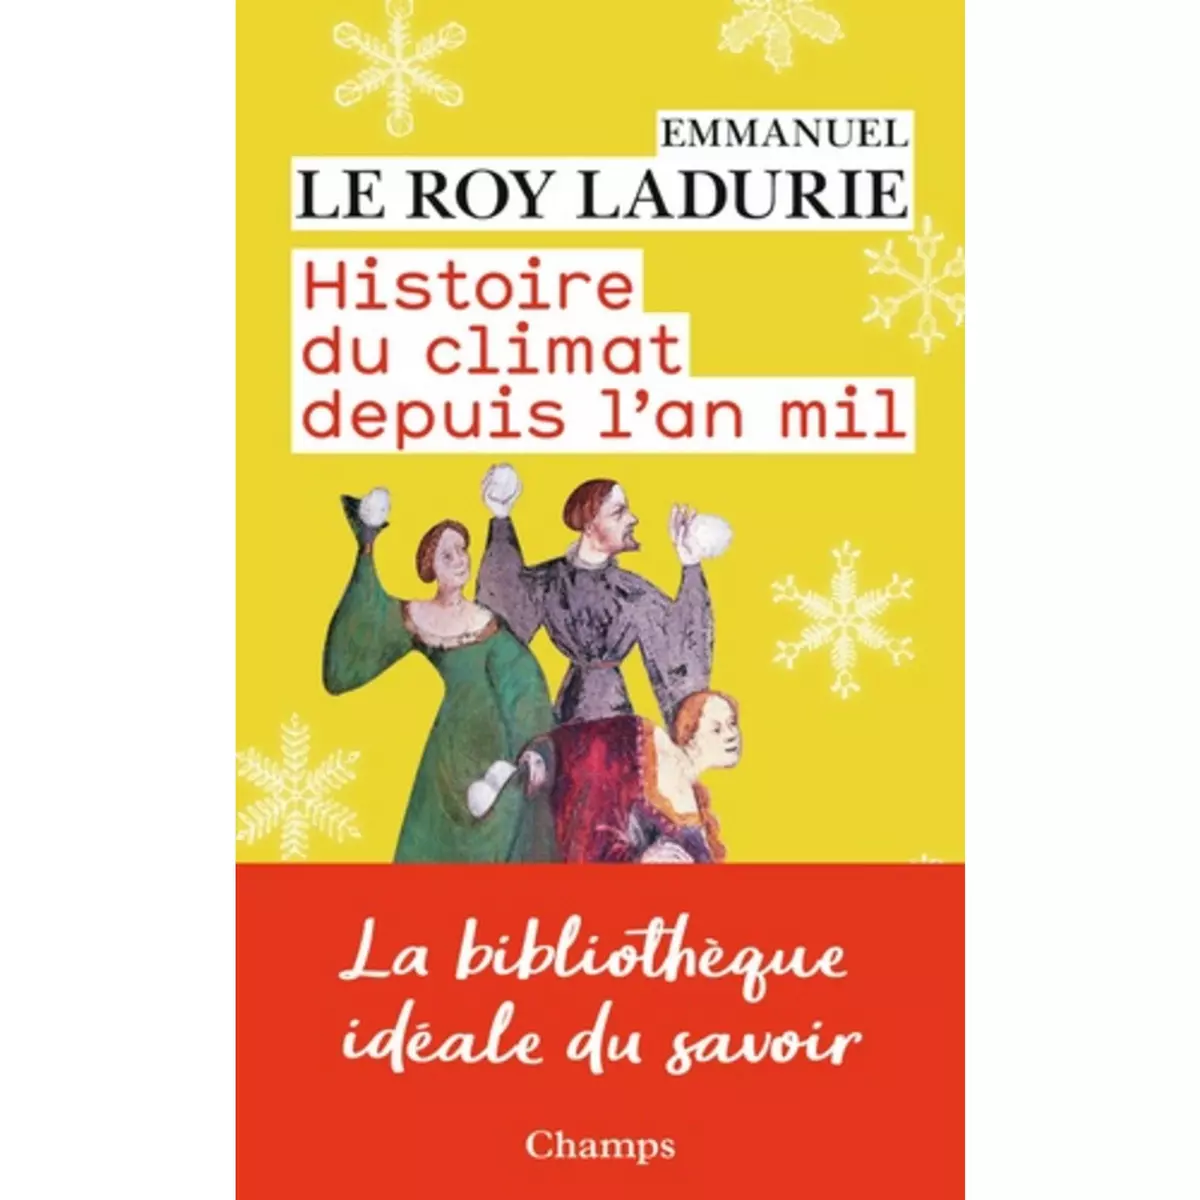  HISTOIRE DU CLIMAT DEPUIS L'AN MIL, Le Roy Ladurie Emmanuel